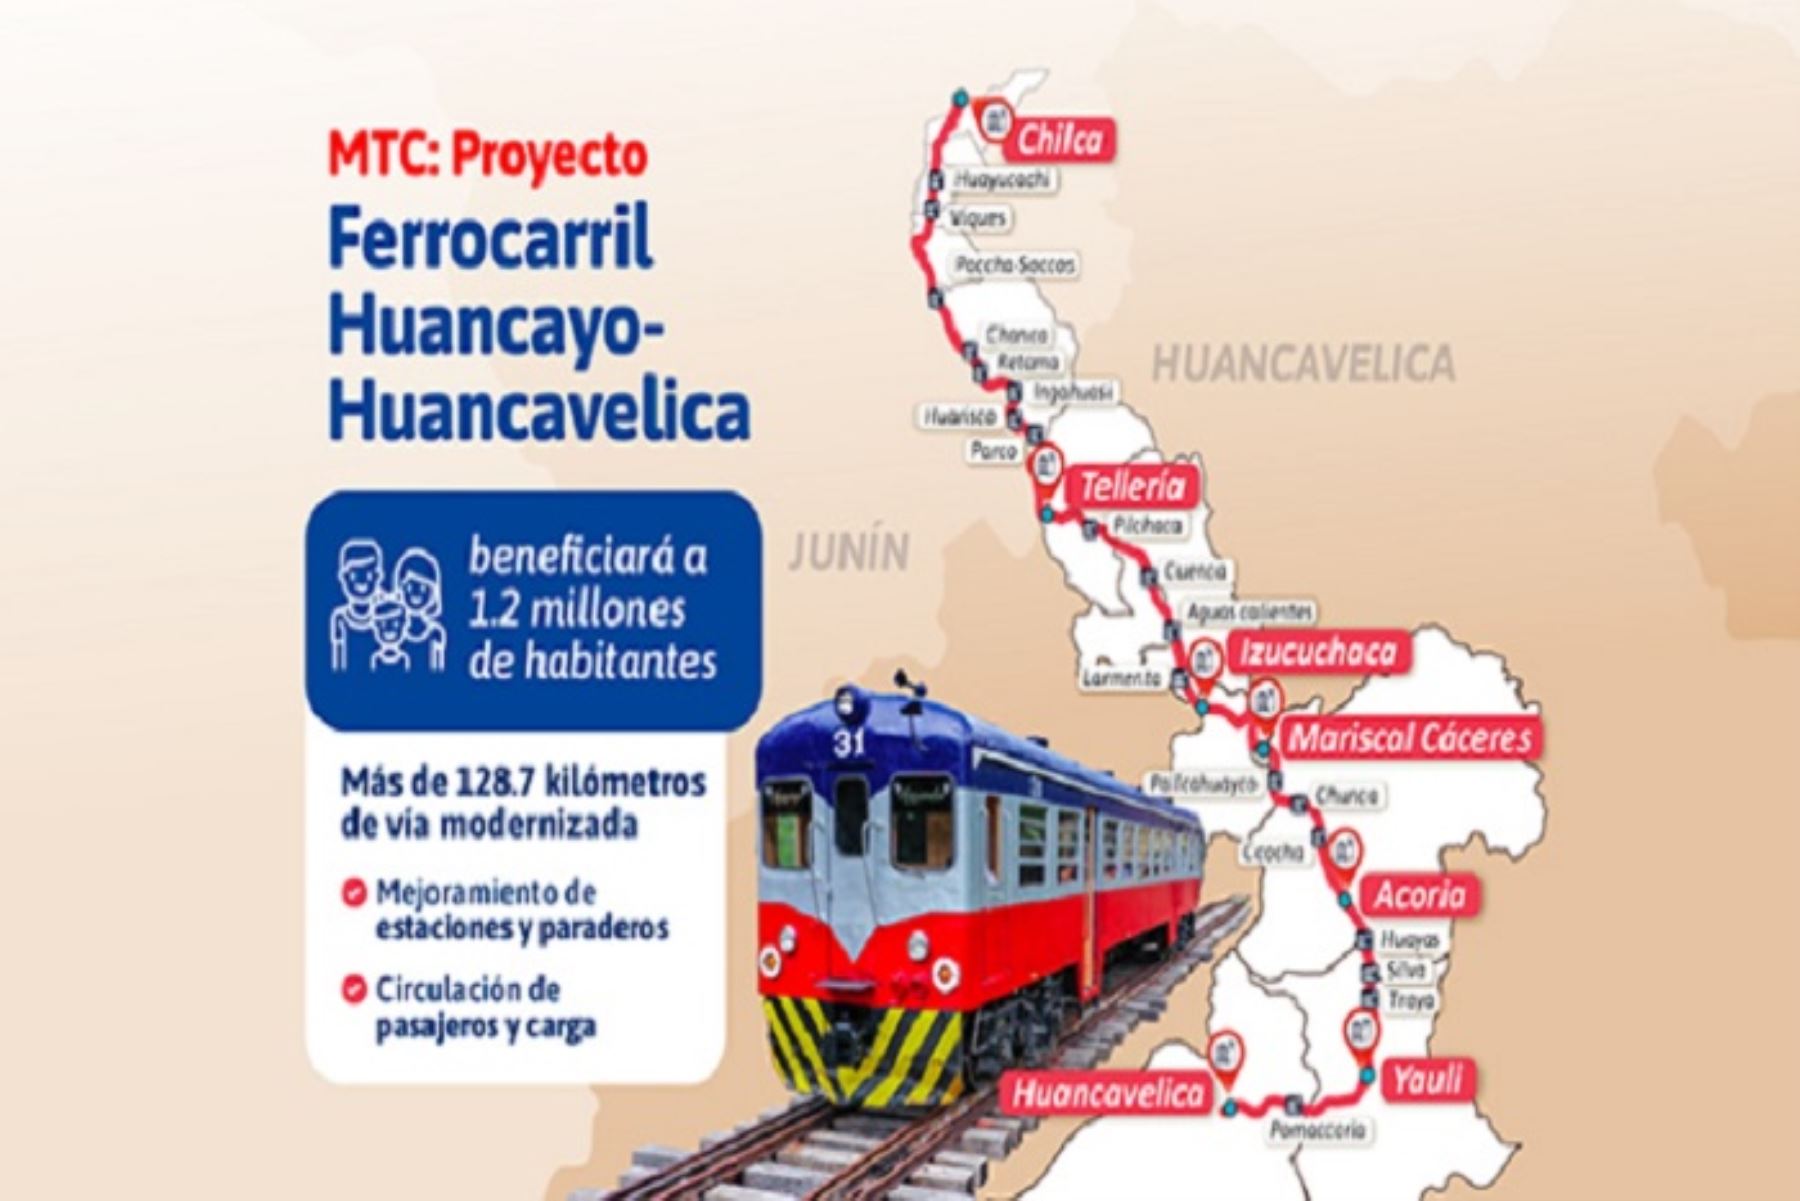 Proyecto Ferrocarril Huancayo-Huancavelica beneficiará a 1.2 millones de habitantes.